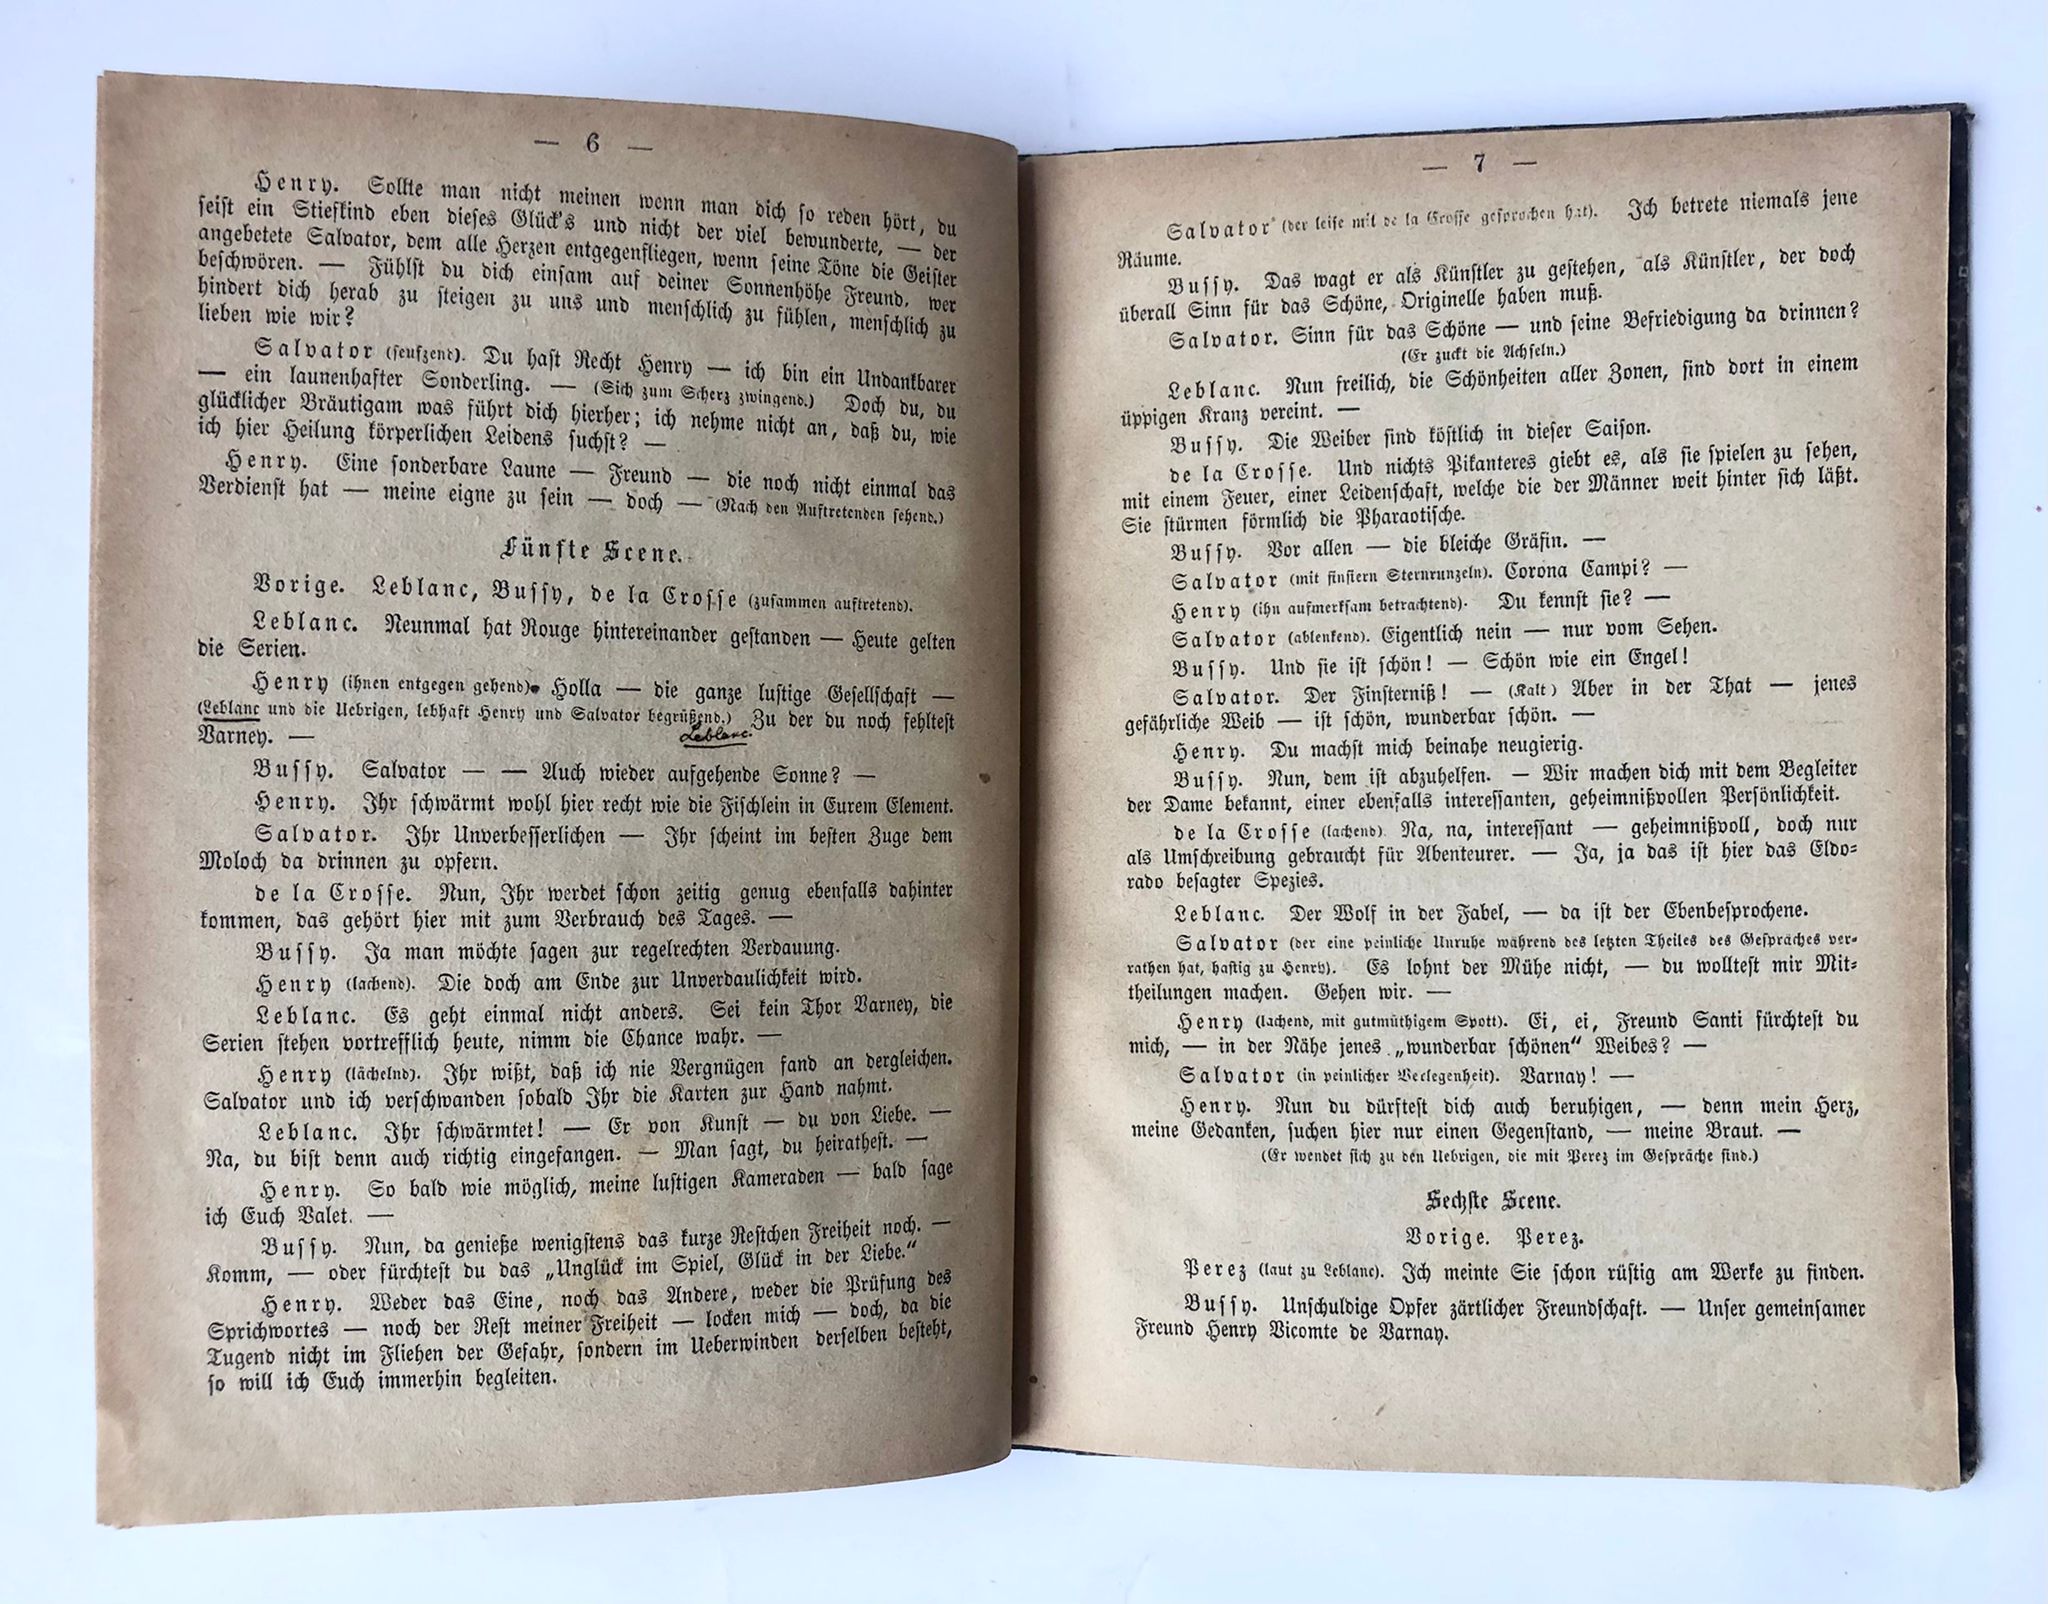 [German theatre play, ca 1900, gambling] Theatre play 'Rouge et noir, oder die Opfer der Spielbank' by Paul Ine, s.l., s.d [ca. 1900?], 44 pp., printed publication.